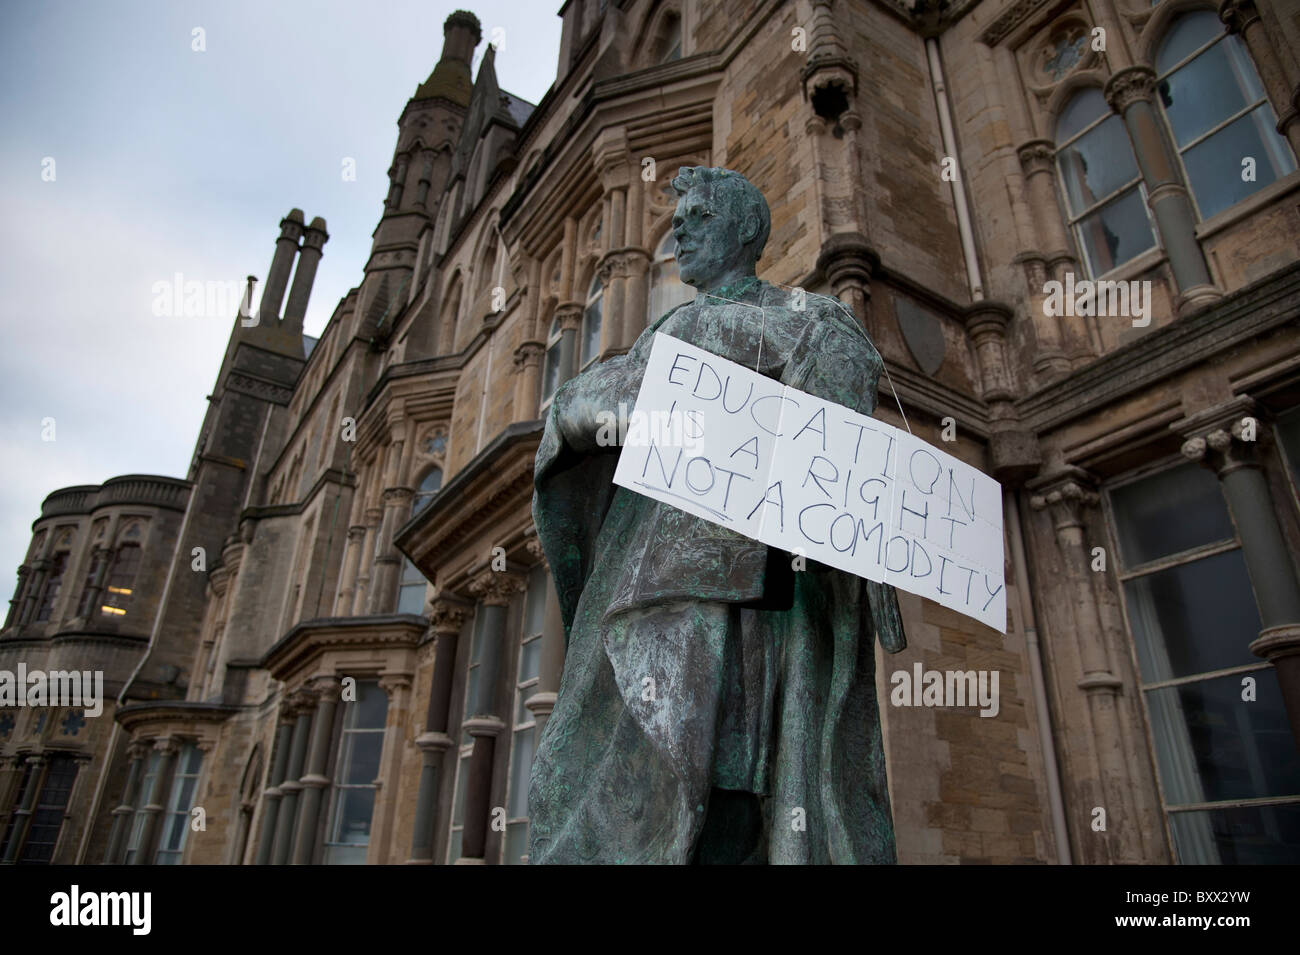 Los estudiantes de la universidad de Aberystwyth protestando por los recortes previstos en la financiación de la educación superior, REINO UNIDO Foto de stock